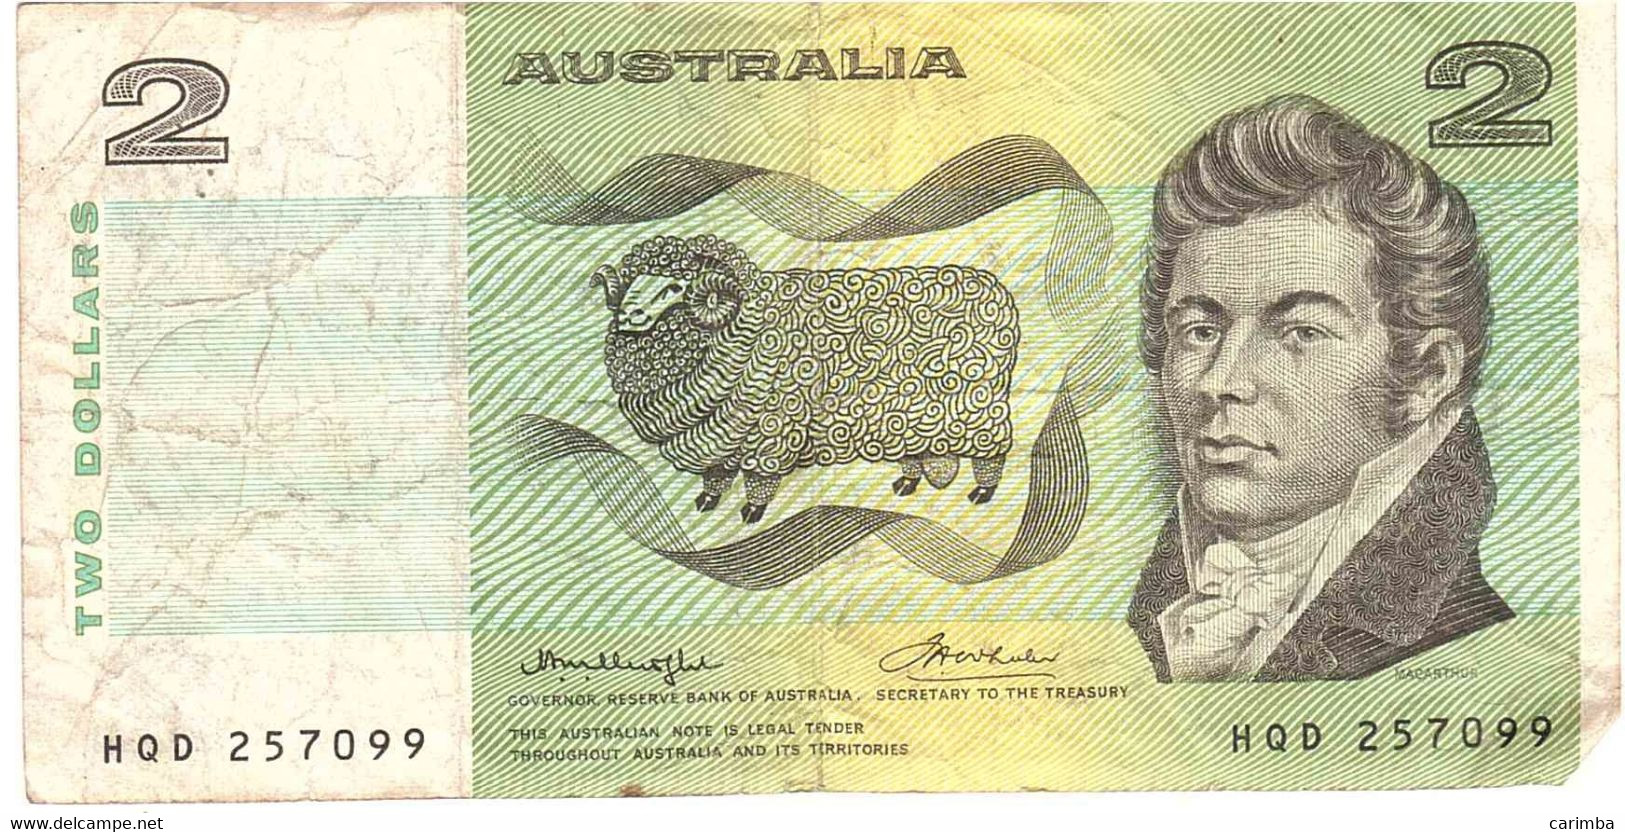 2 DOLLARS - 1992-2001 (kunststoffgeldscheine)